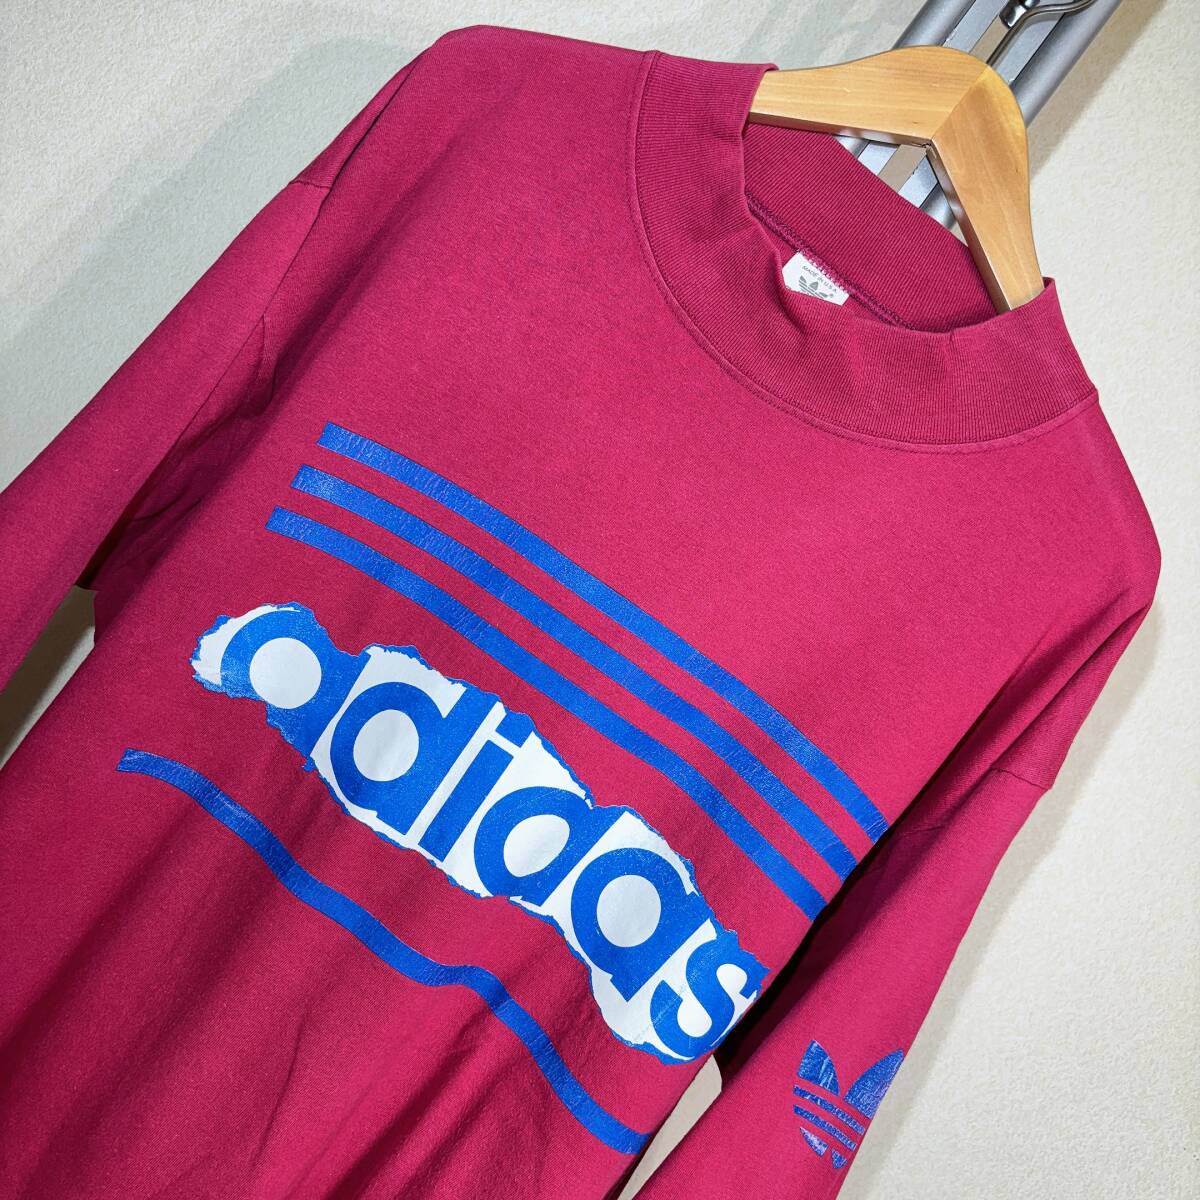 W941#USA производства б/у одежда *80s Vintage!/adidas Adidas * красный розовый / Logo &to зеркальный . il * футболка с длинным рукавом #US XL